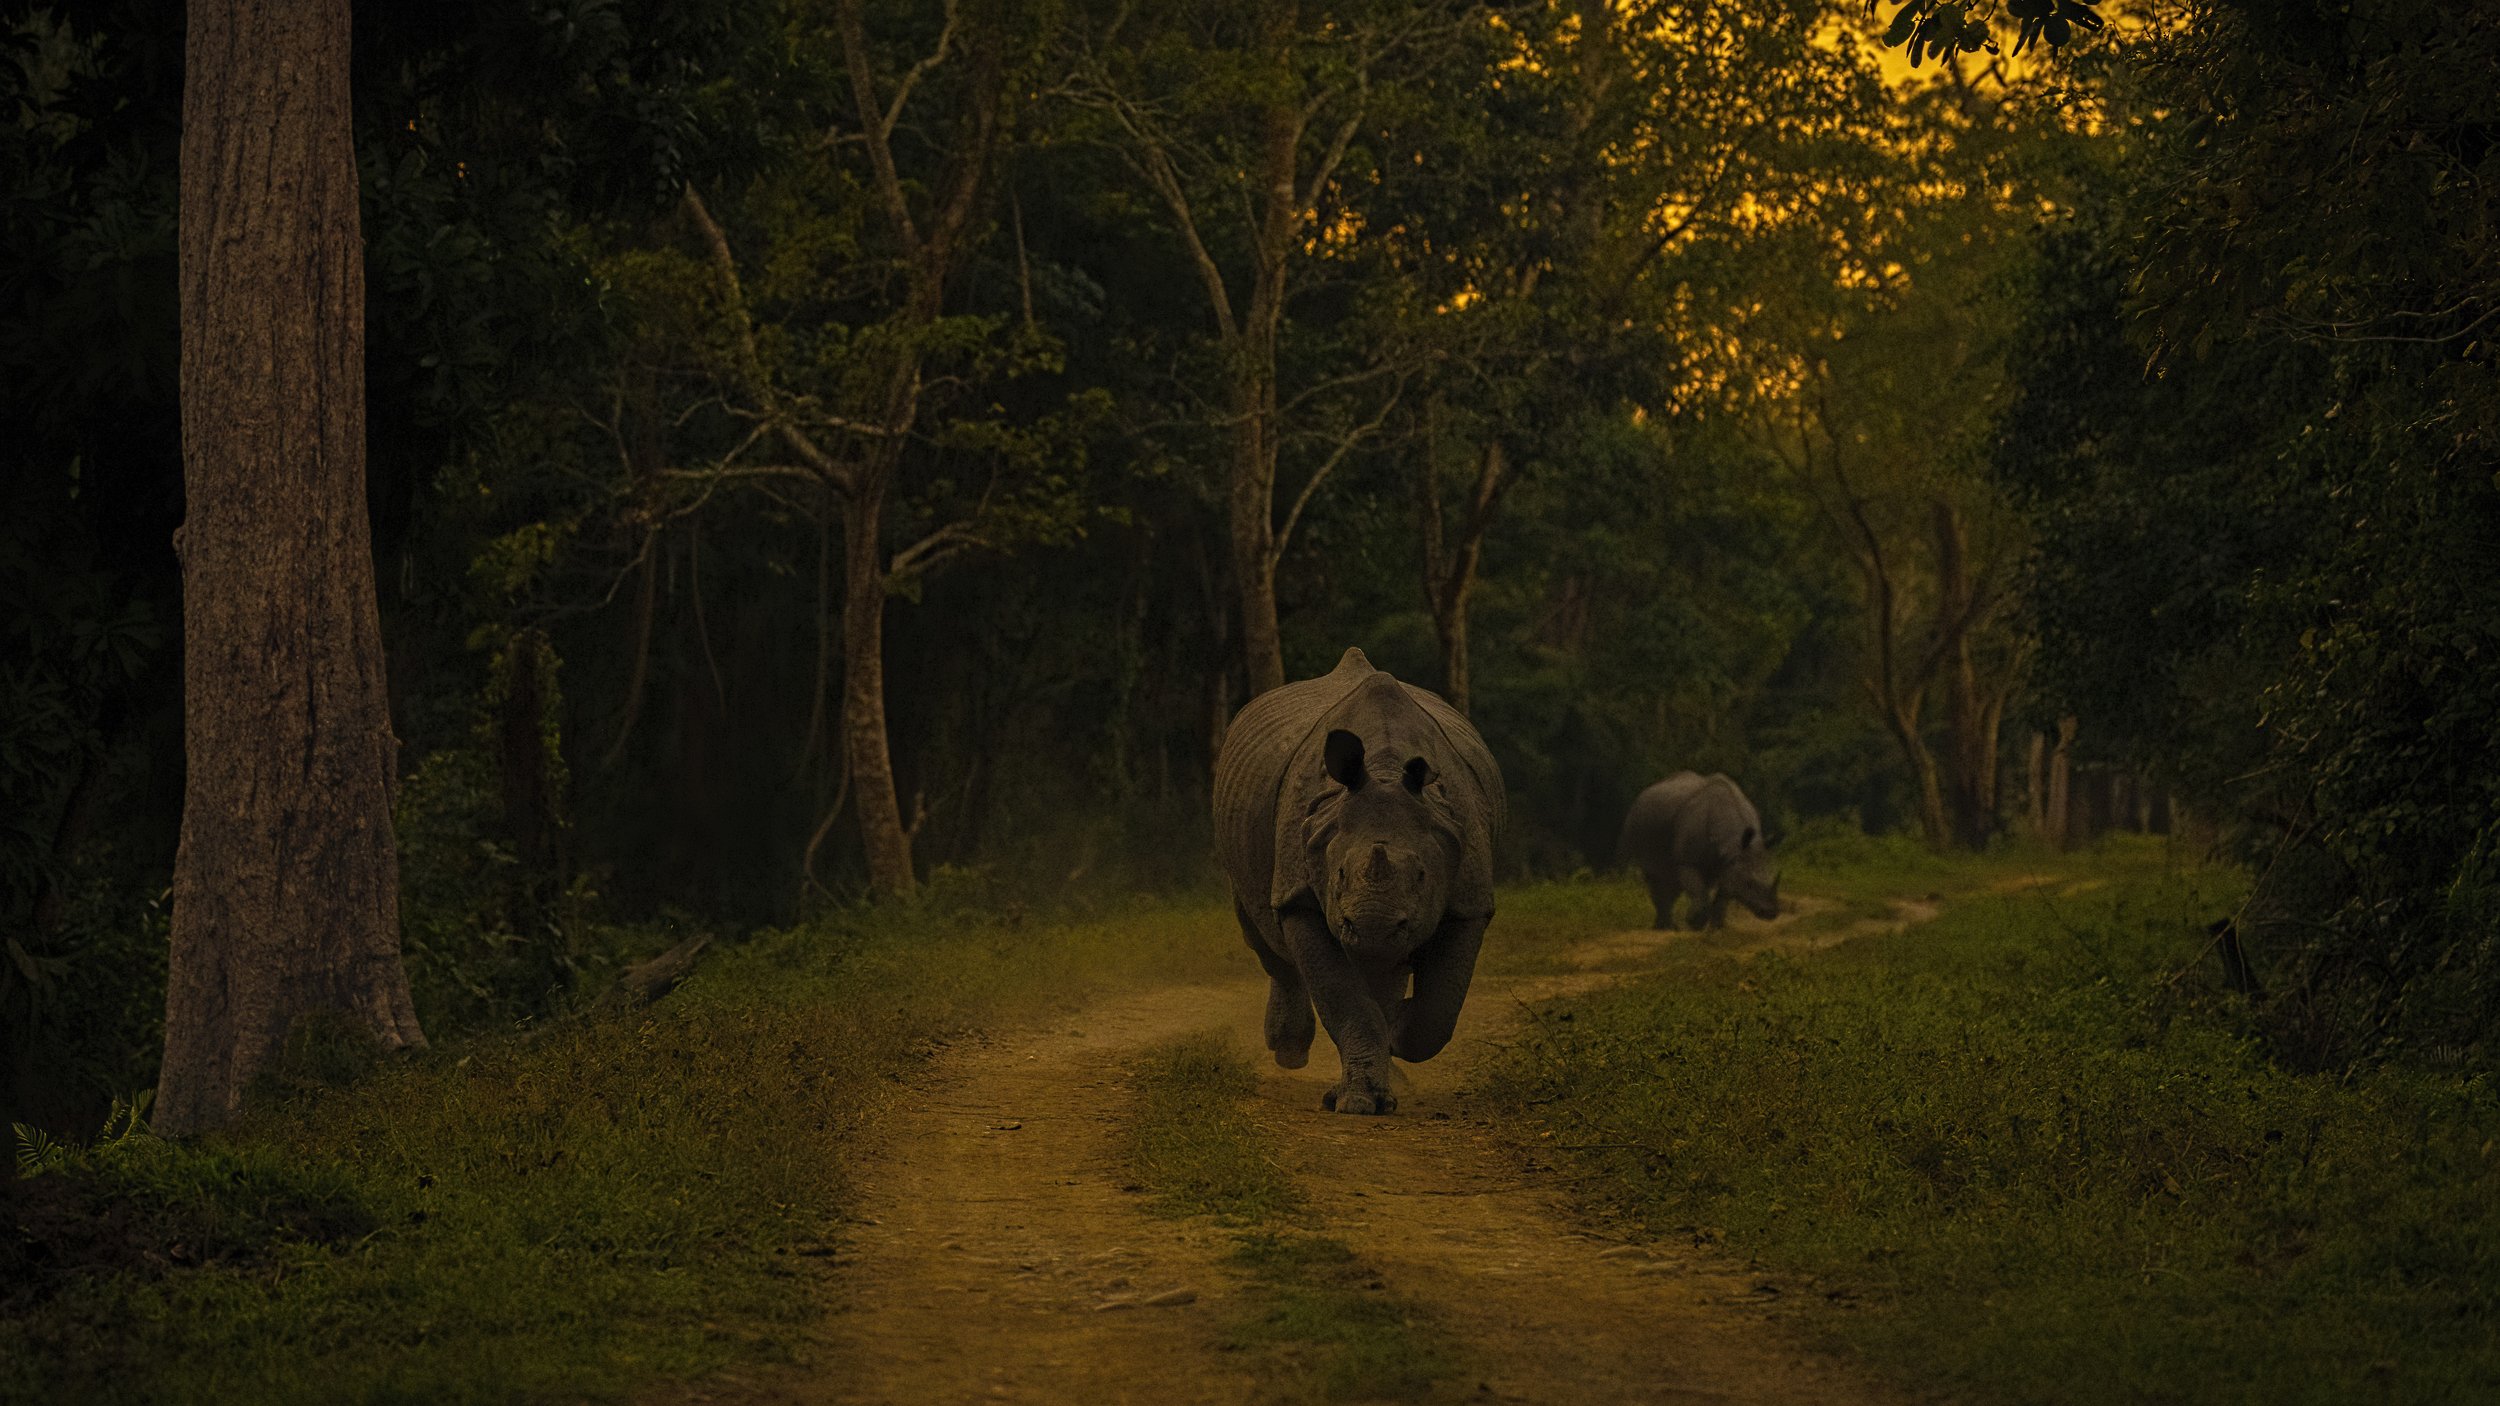 rhino charge kaziranga assam, Arpan Saha